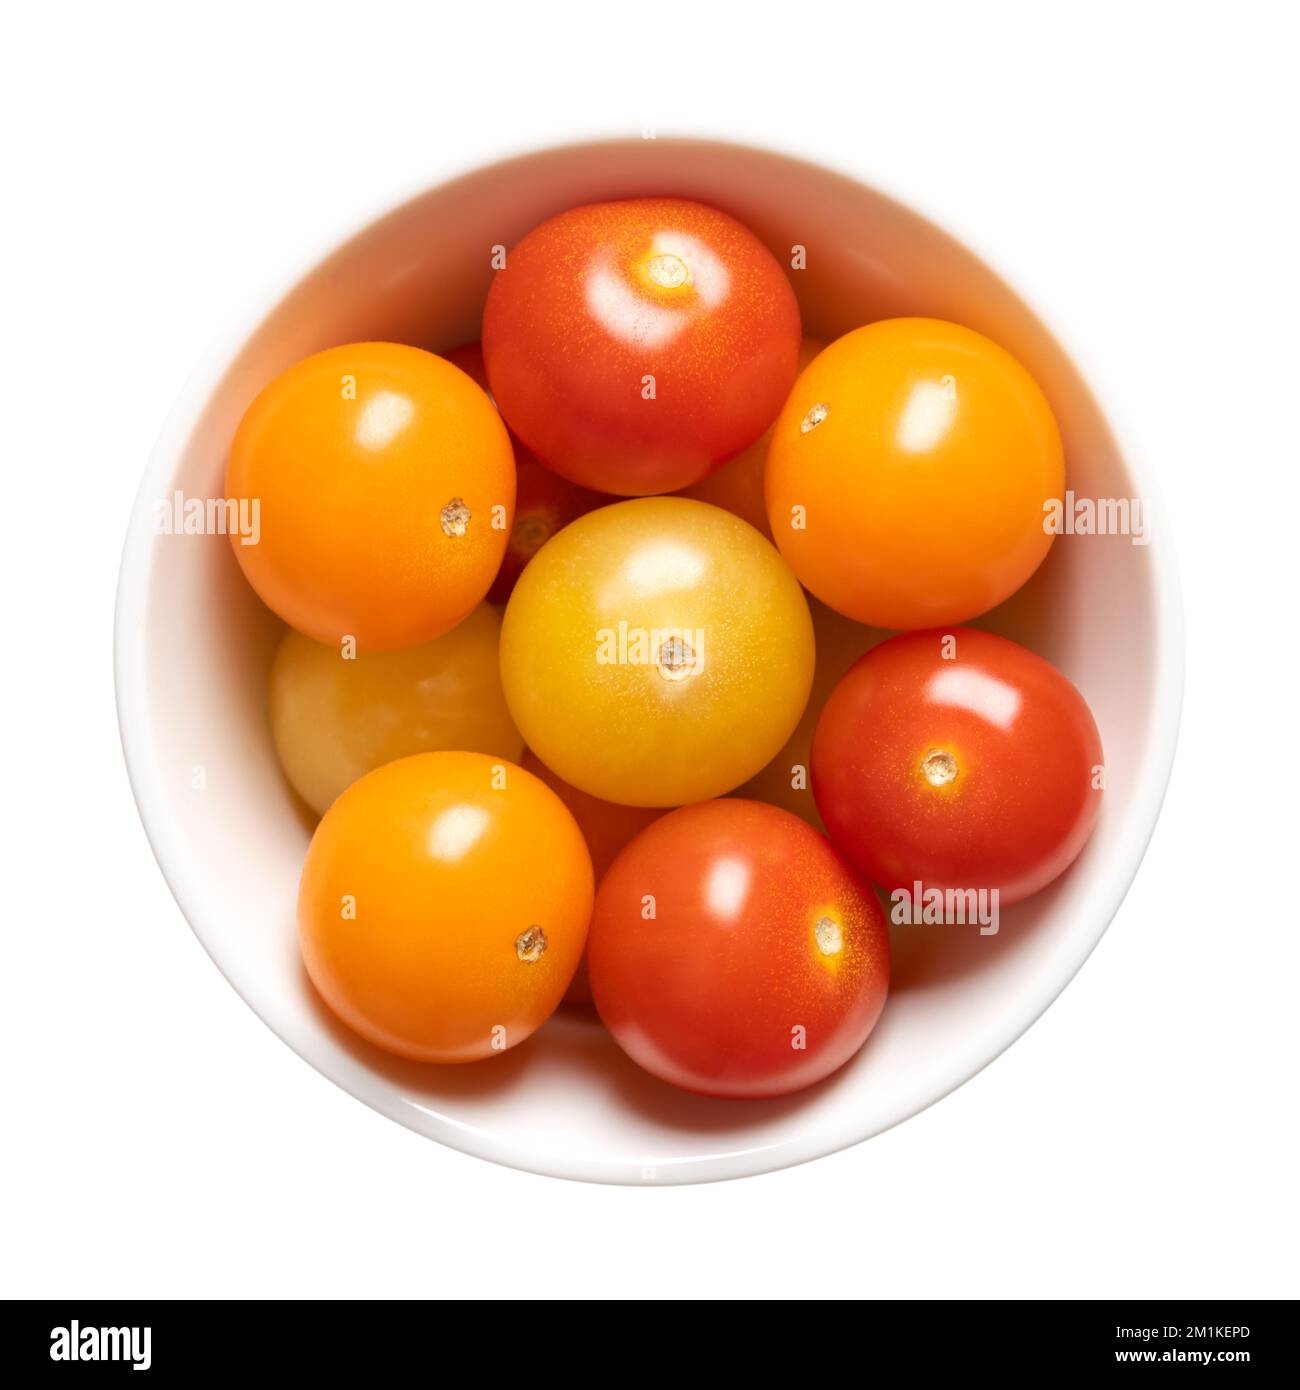 Tomates cerises colorées dans un bol blanc. Tomates cocktail fraîches et mûres de petite taille et rondes, de couleur rouge, jaune et orange. Banque D'Images